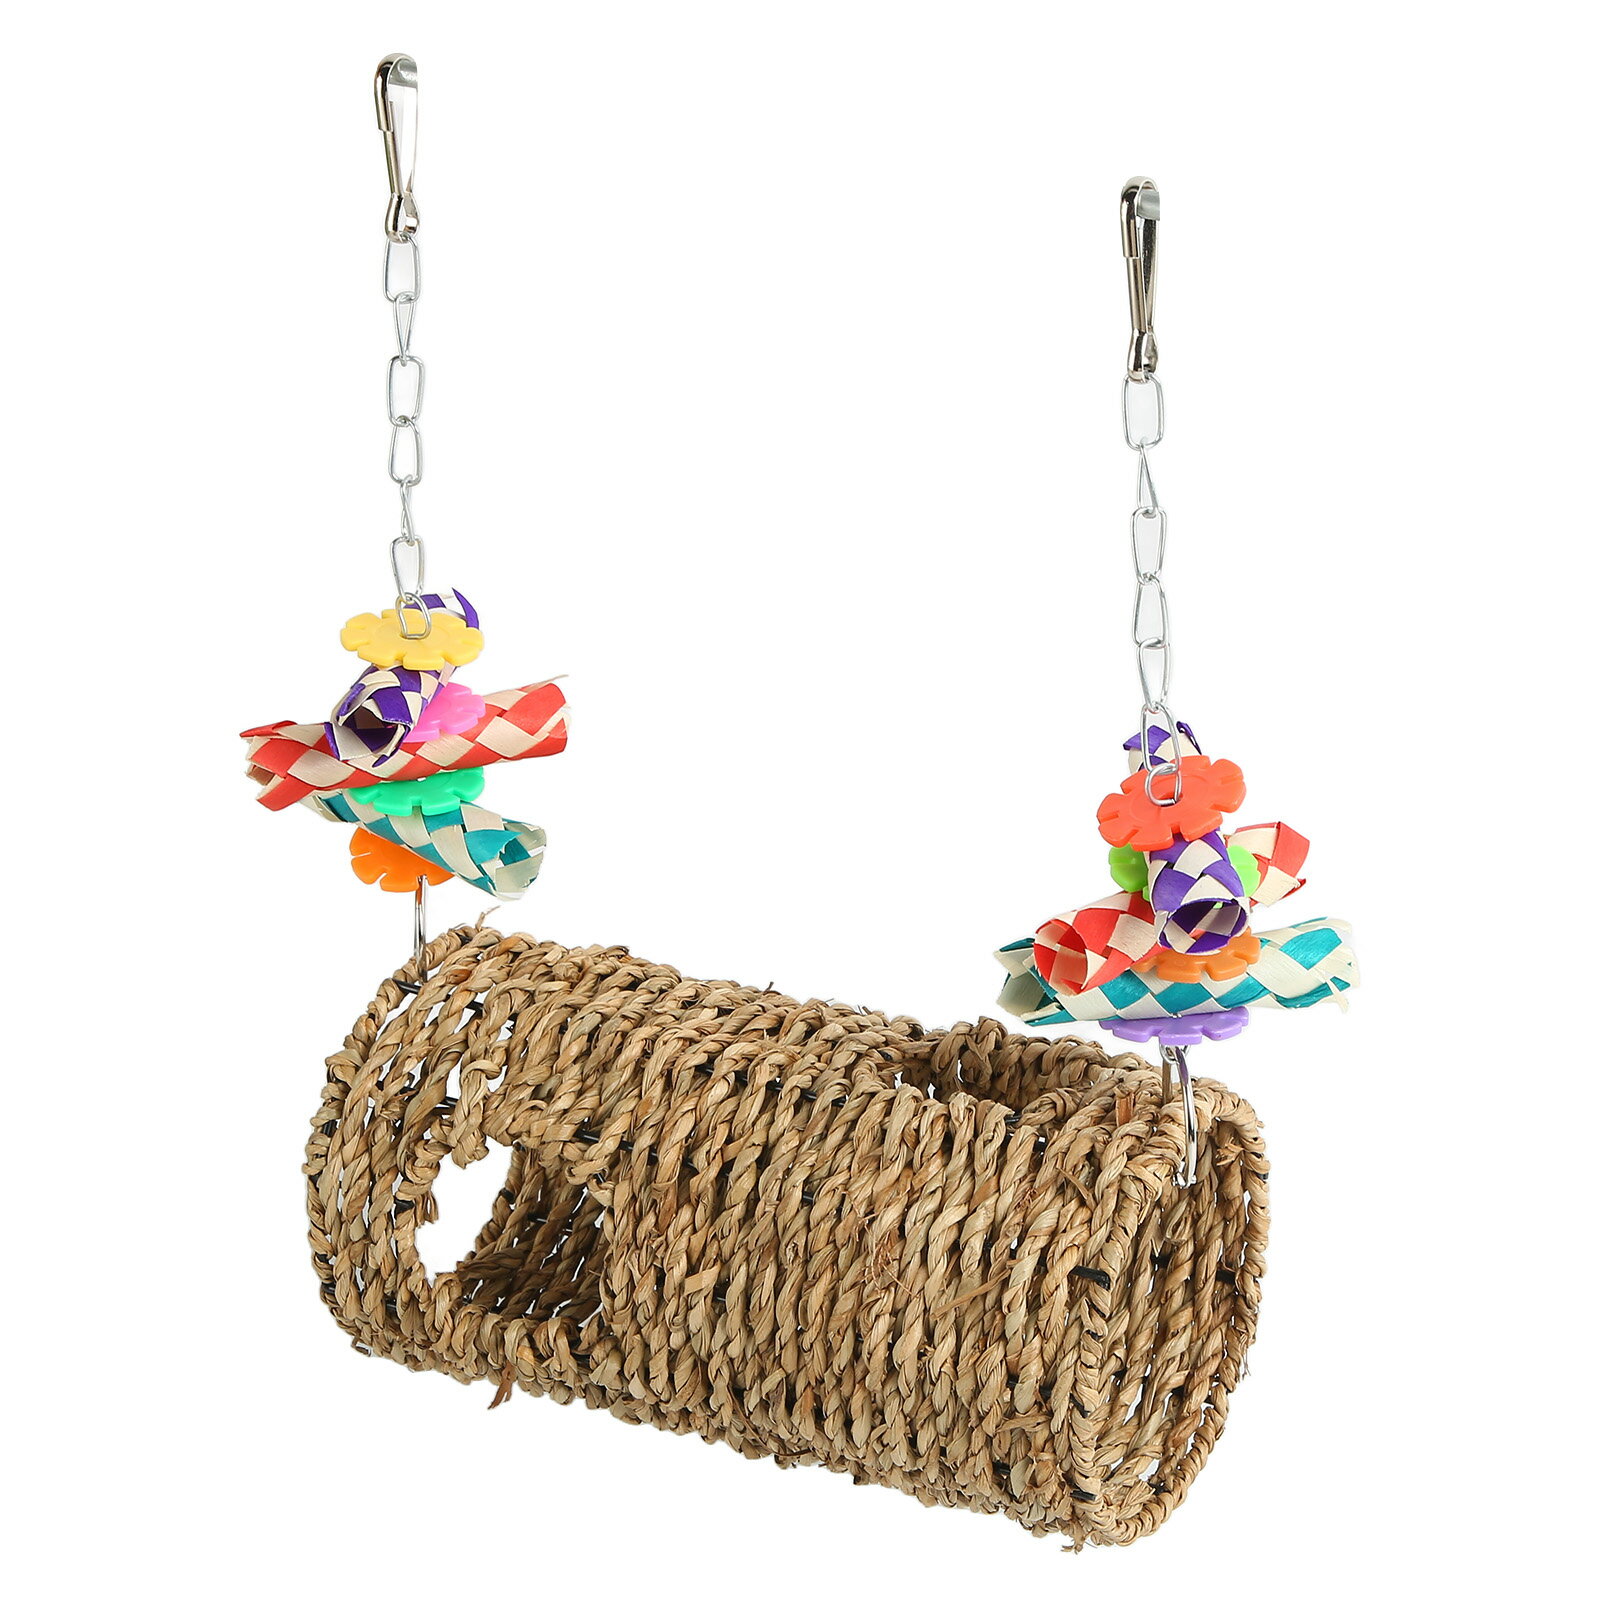 鳥草編みスイング フック付き 耐久性と楽しい鳥かごのおもちゃ 鳥の咀嚼用 立っているオウム セキセイインコ インコ オカメインコ 九官鳥 ラヴバード フィンチのおもちゃ